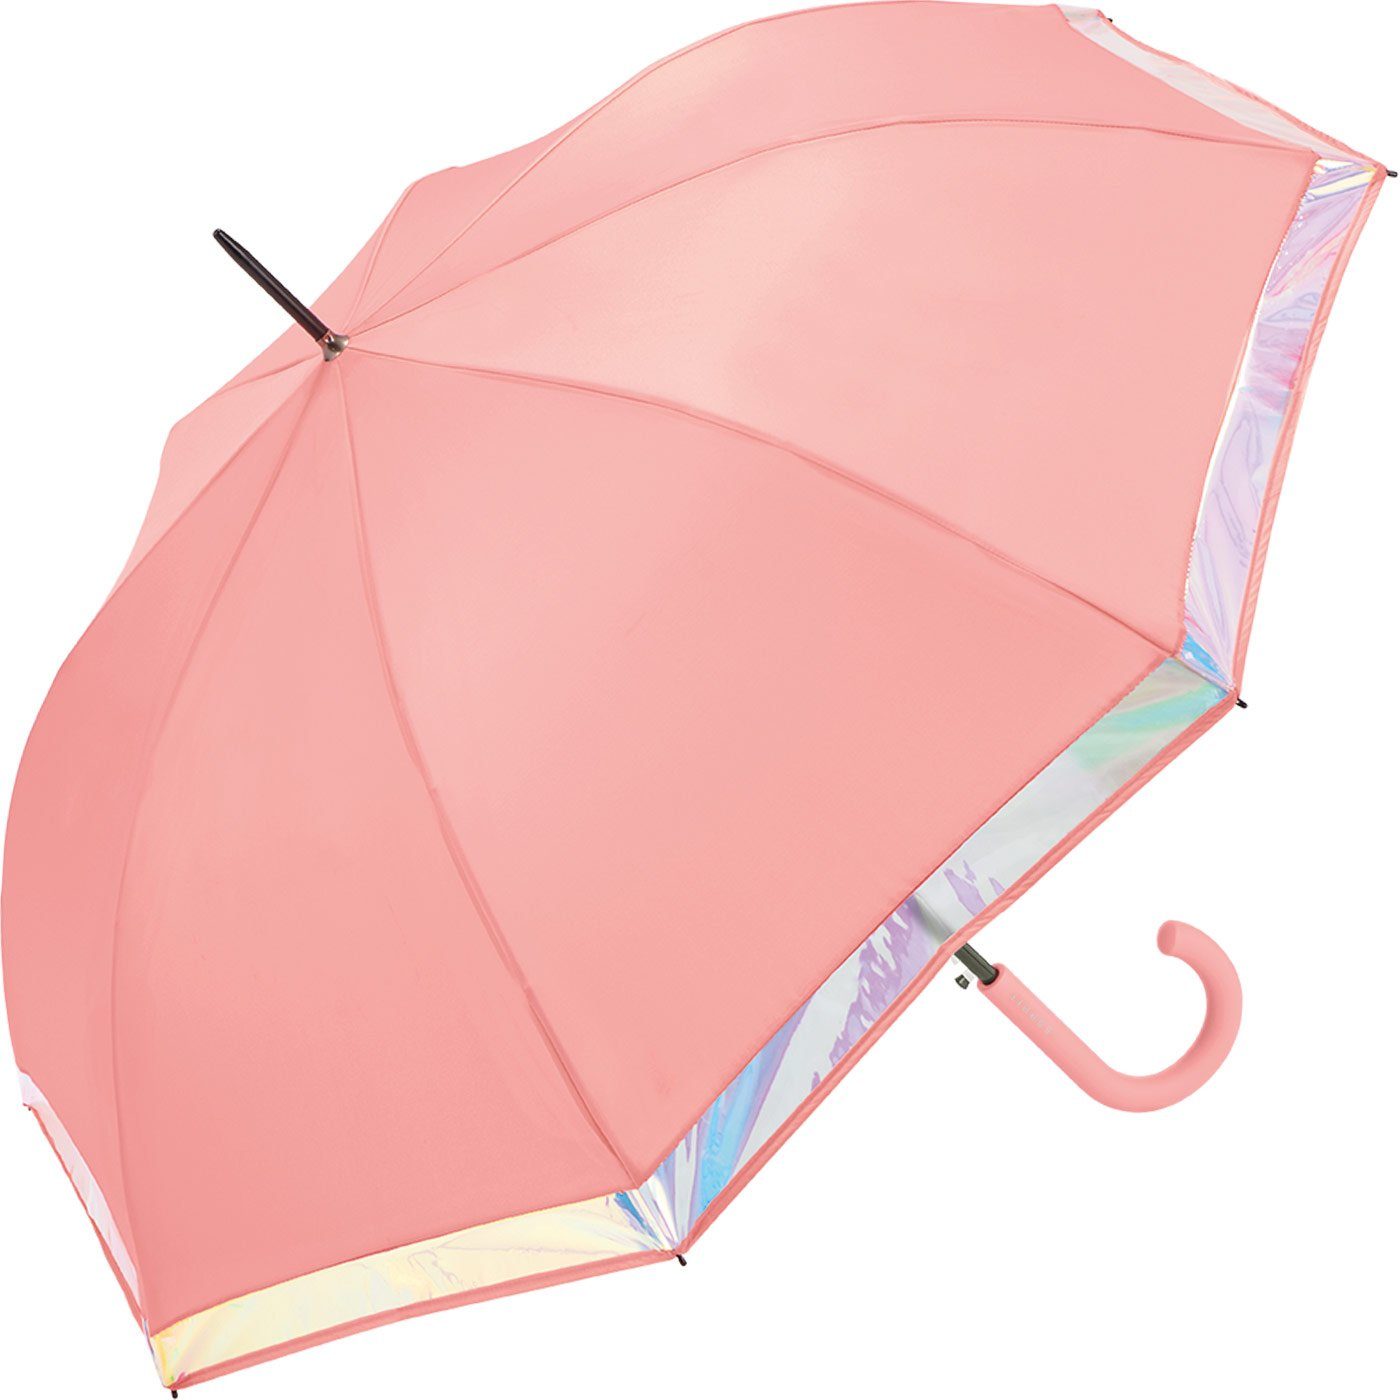 Esprit Langregenschirm Borte schimmernder Shiny mit groß Damen Border, Automatik stabil, und lachs mit Regenschirm